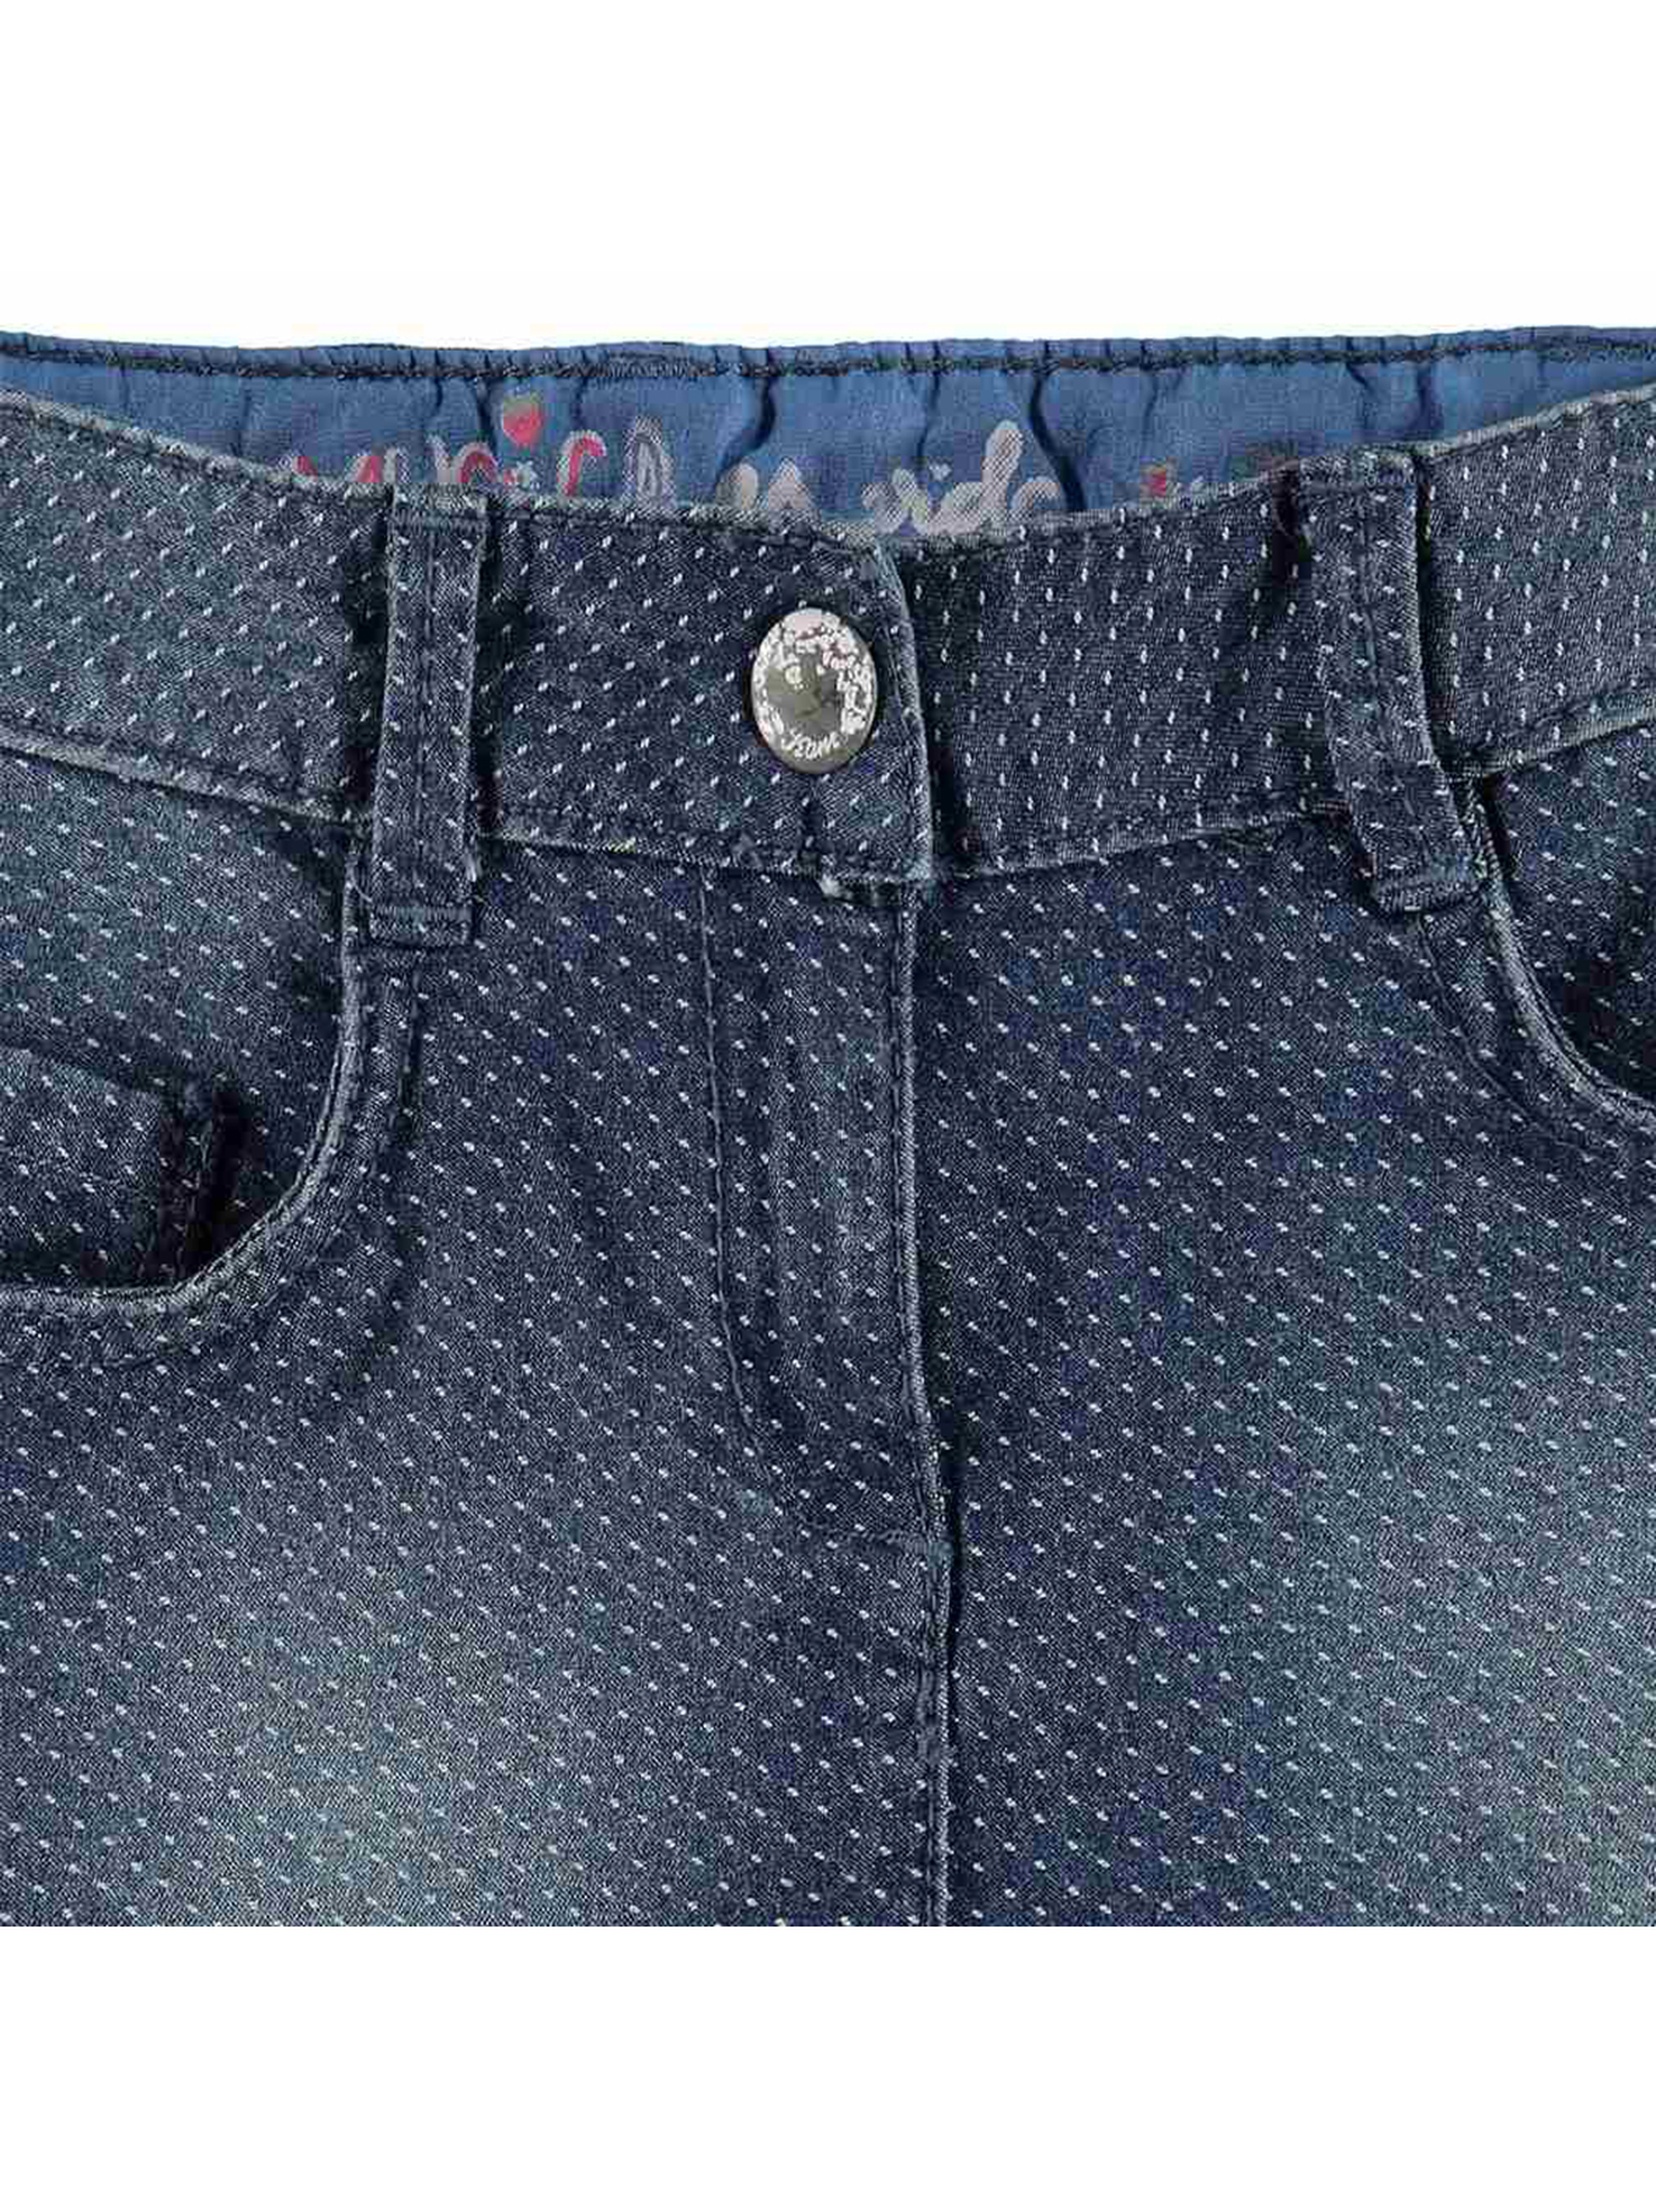 Spódnica jeansowa dziewczęca niebieska kropki